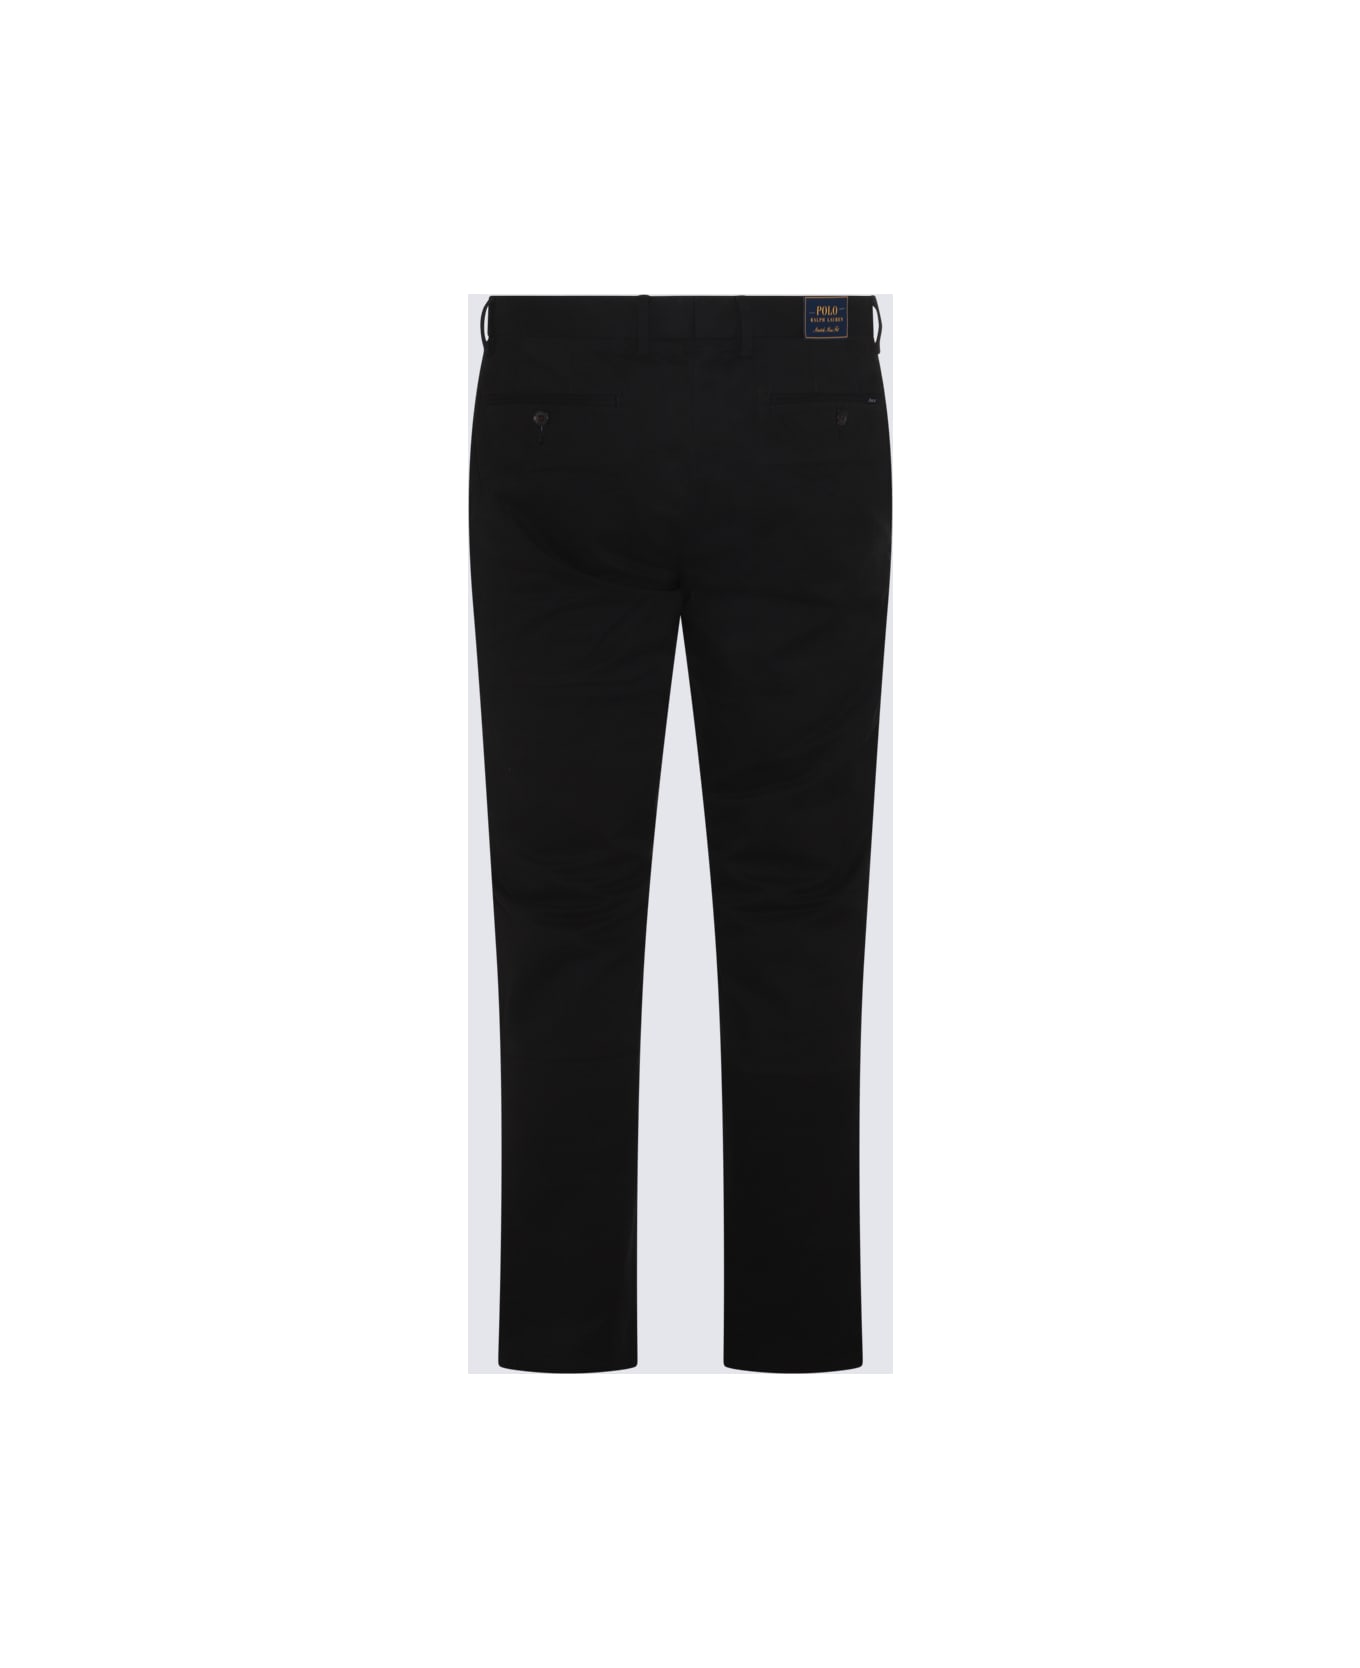 Polo Ralph Lauren Black Cotton Pants - POLO BLACK ボトムス